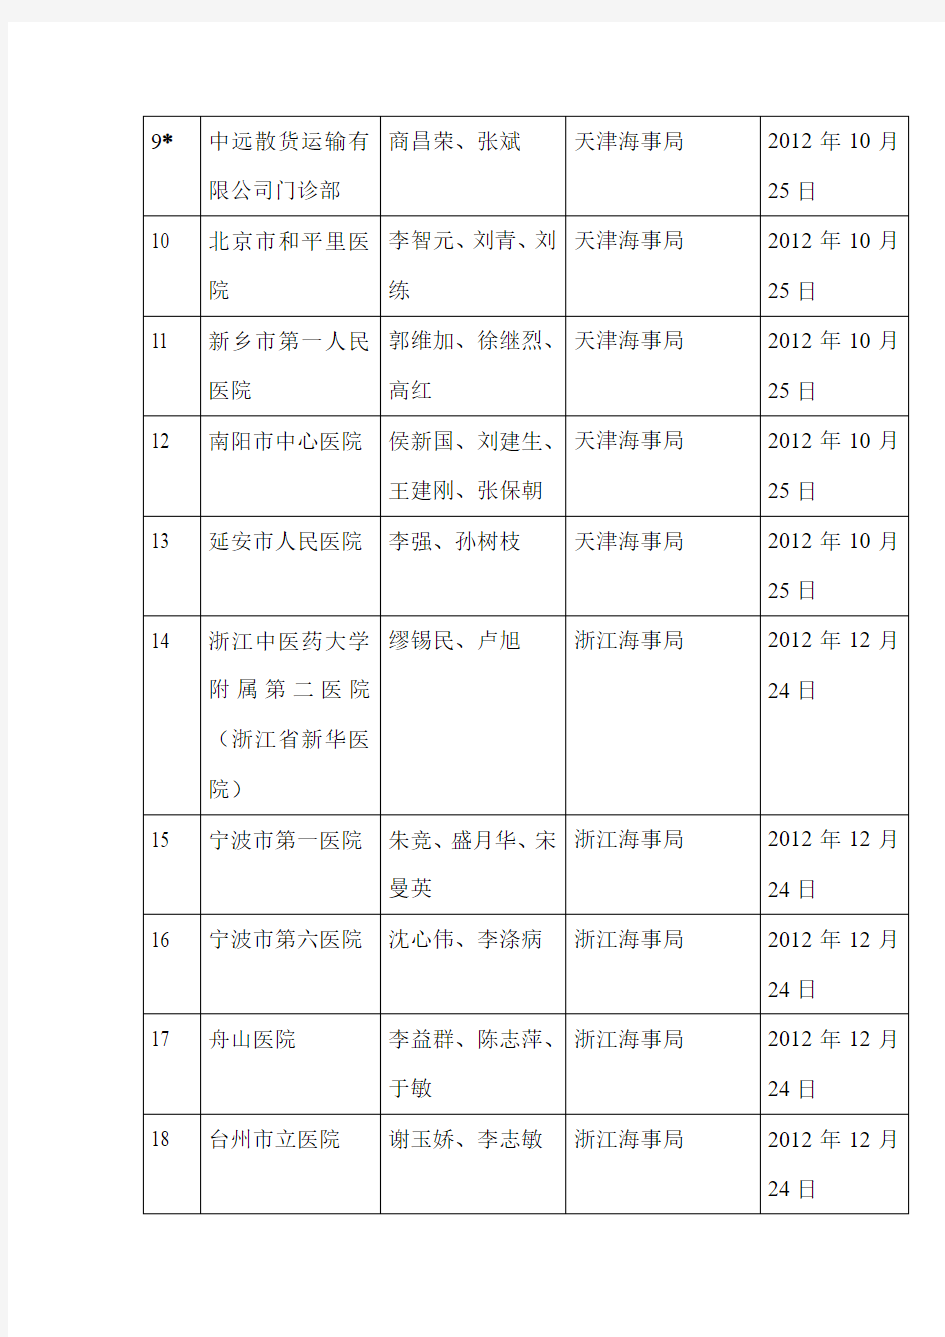 深圳具备海船船员健康体检机构资质,及其所属主检医师的名单